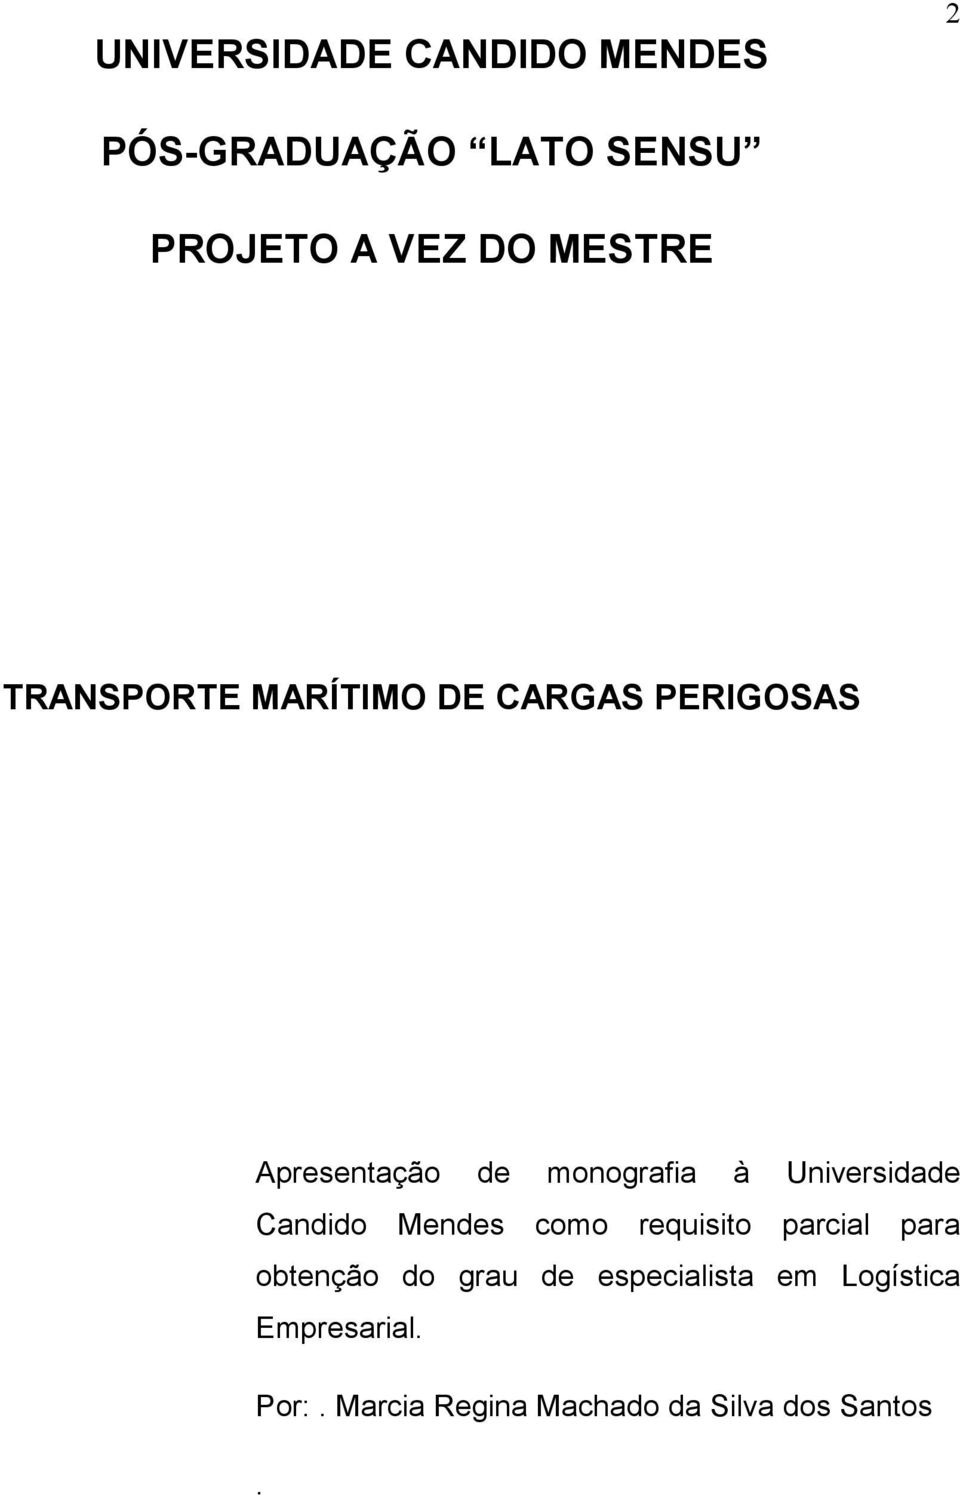 Universidade Candido Mendes como requisito parcial para obtenção do grau de